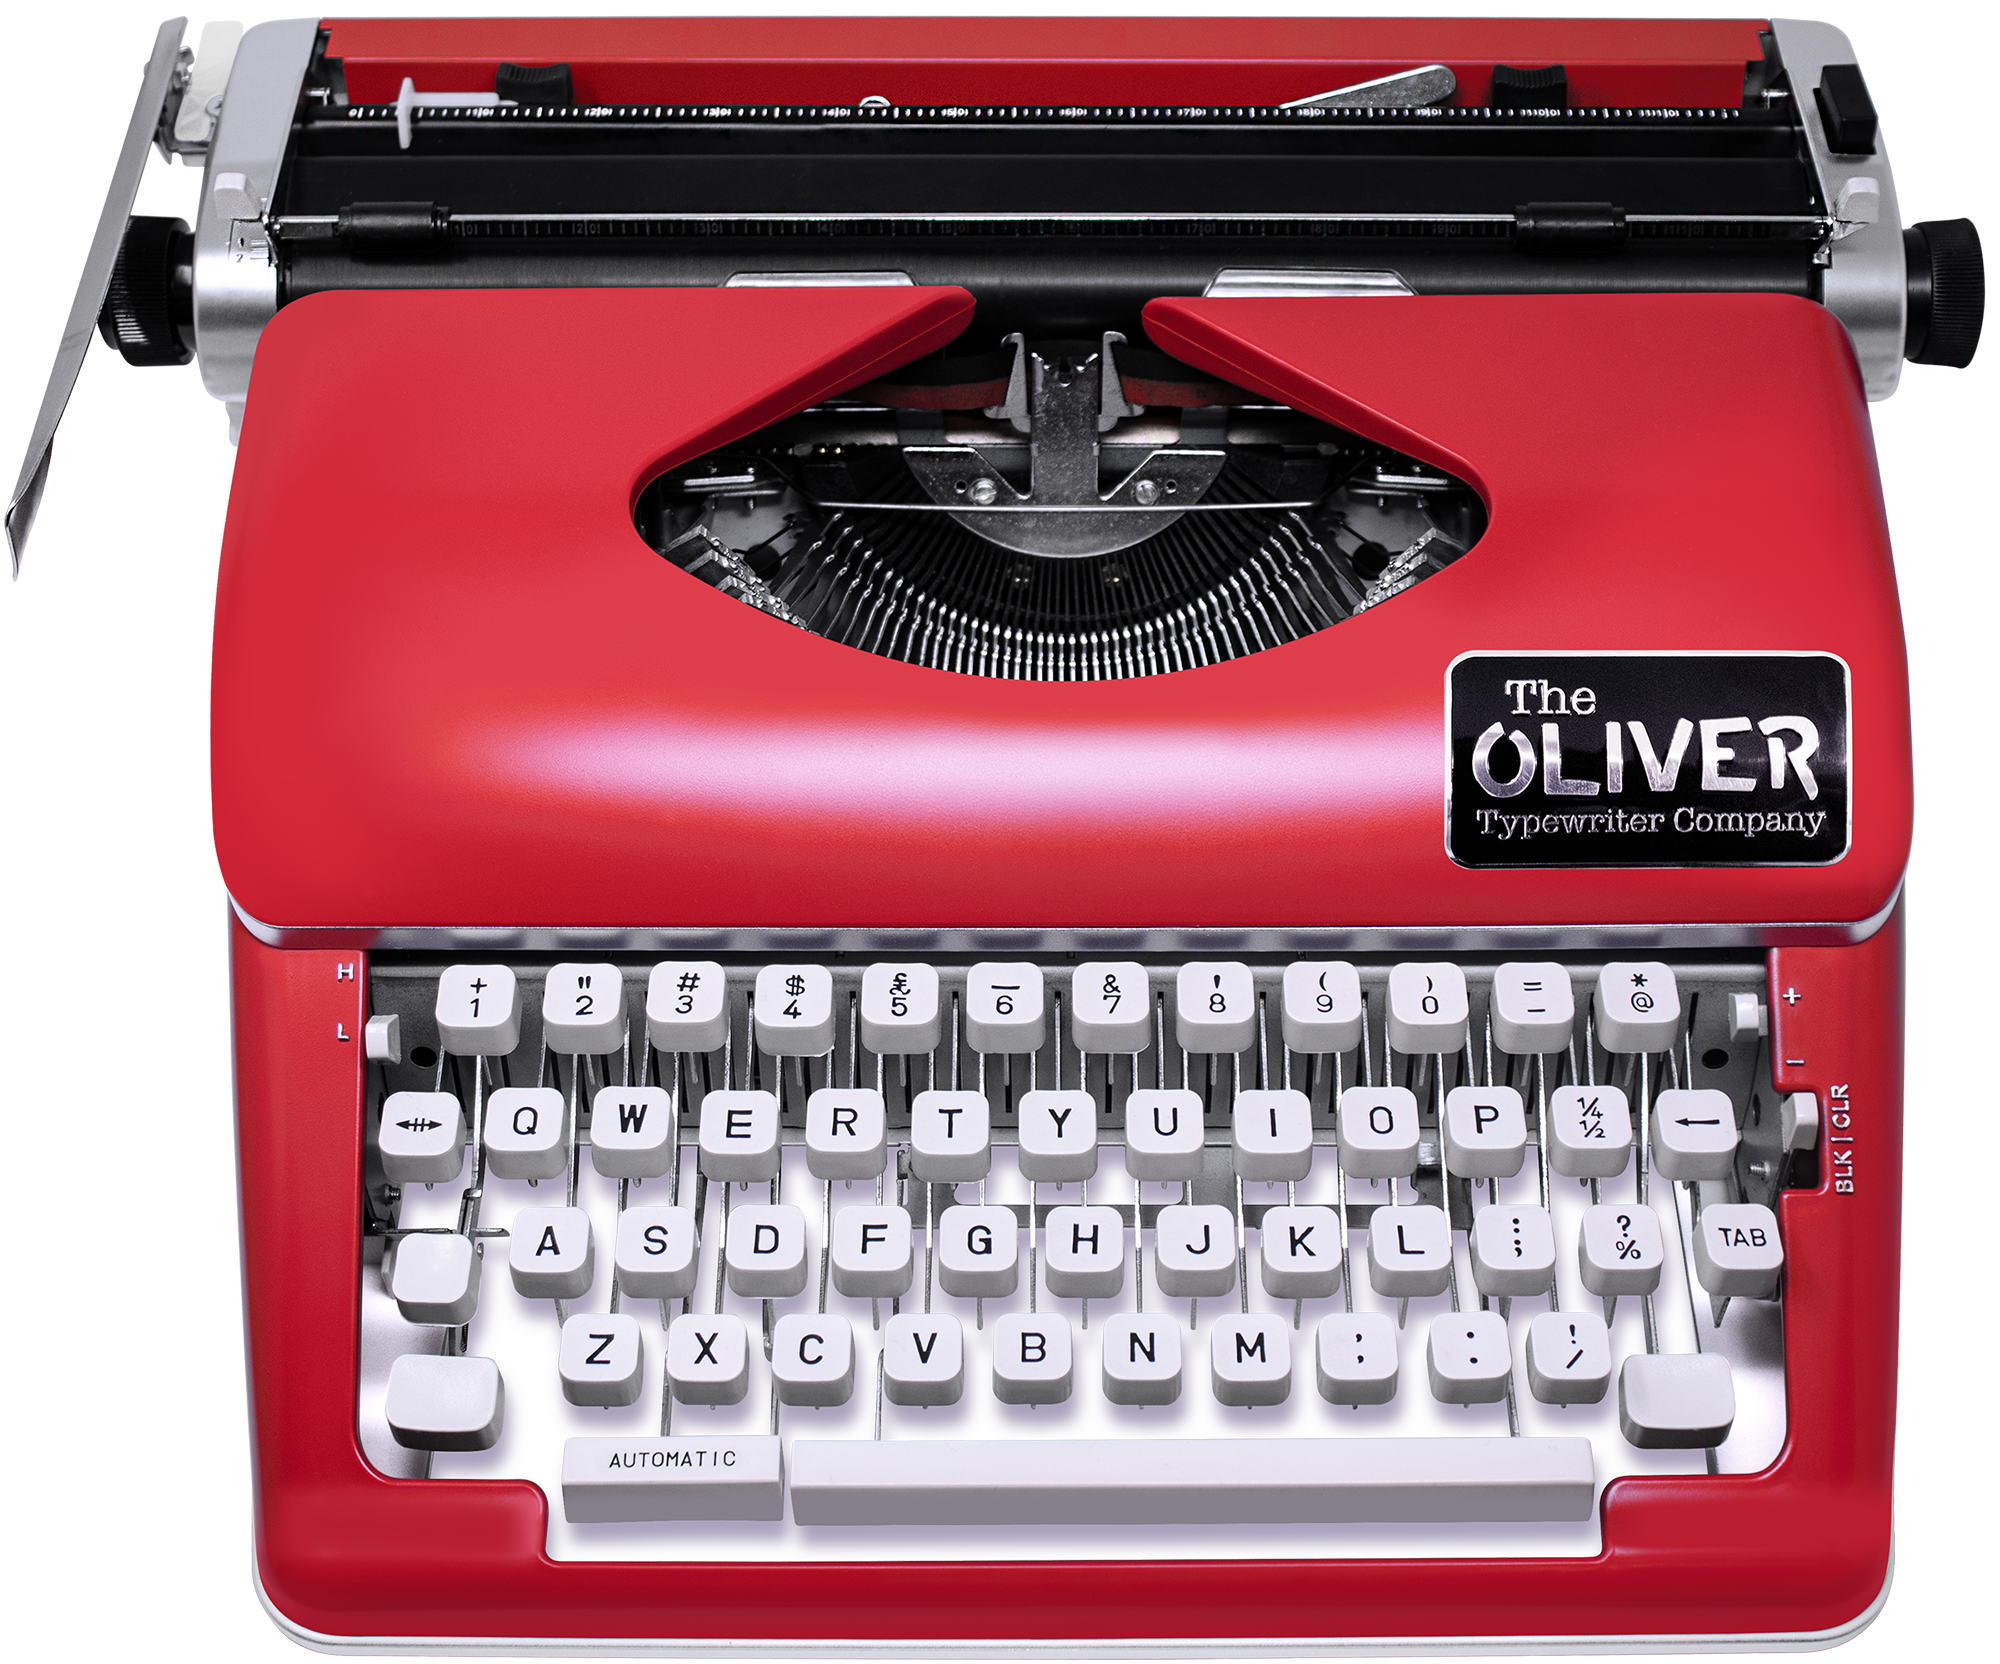 Royal Classic Manual Metal Typewriter Machine with Storage Case, Red